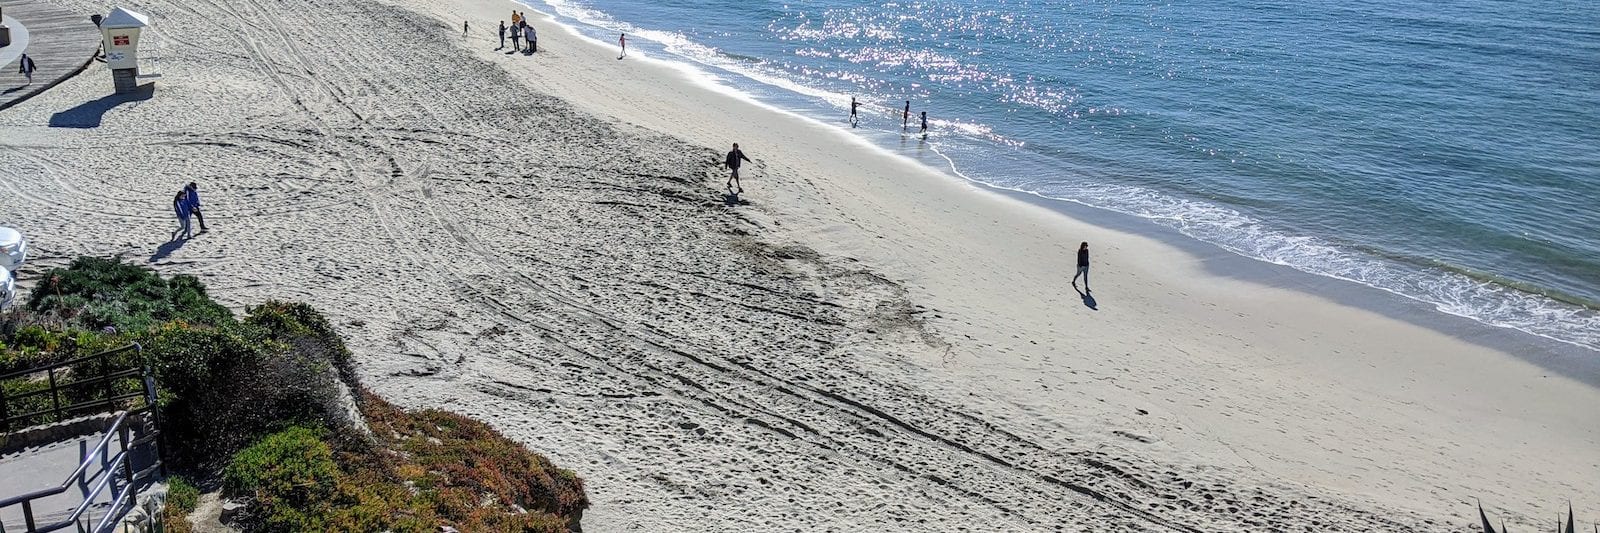 Laguna Beach Main Beach California